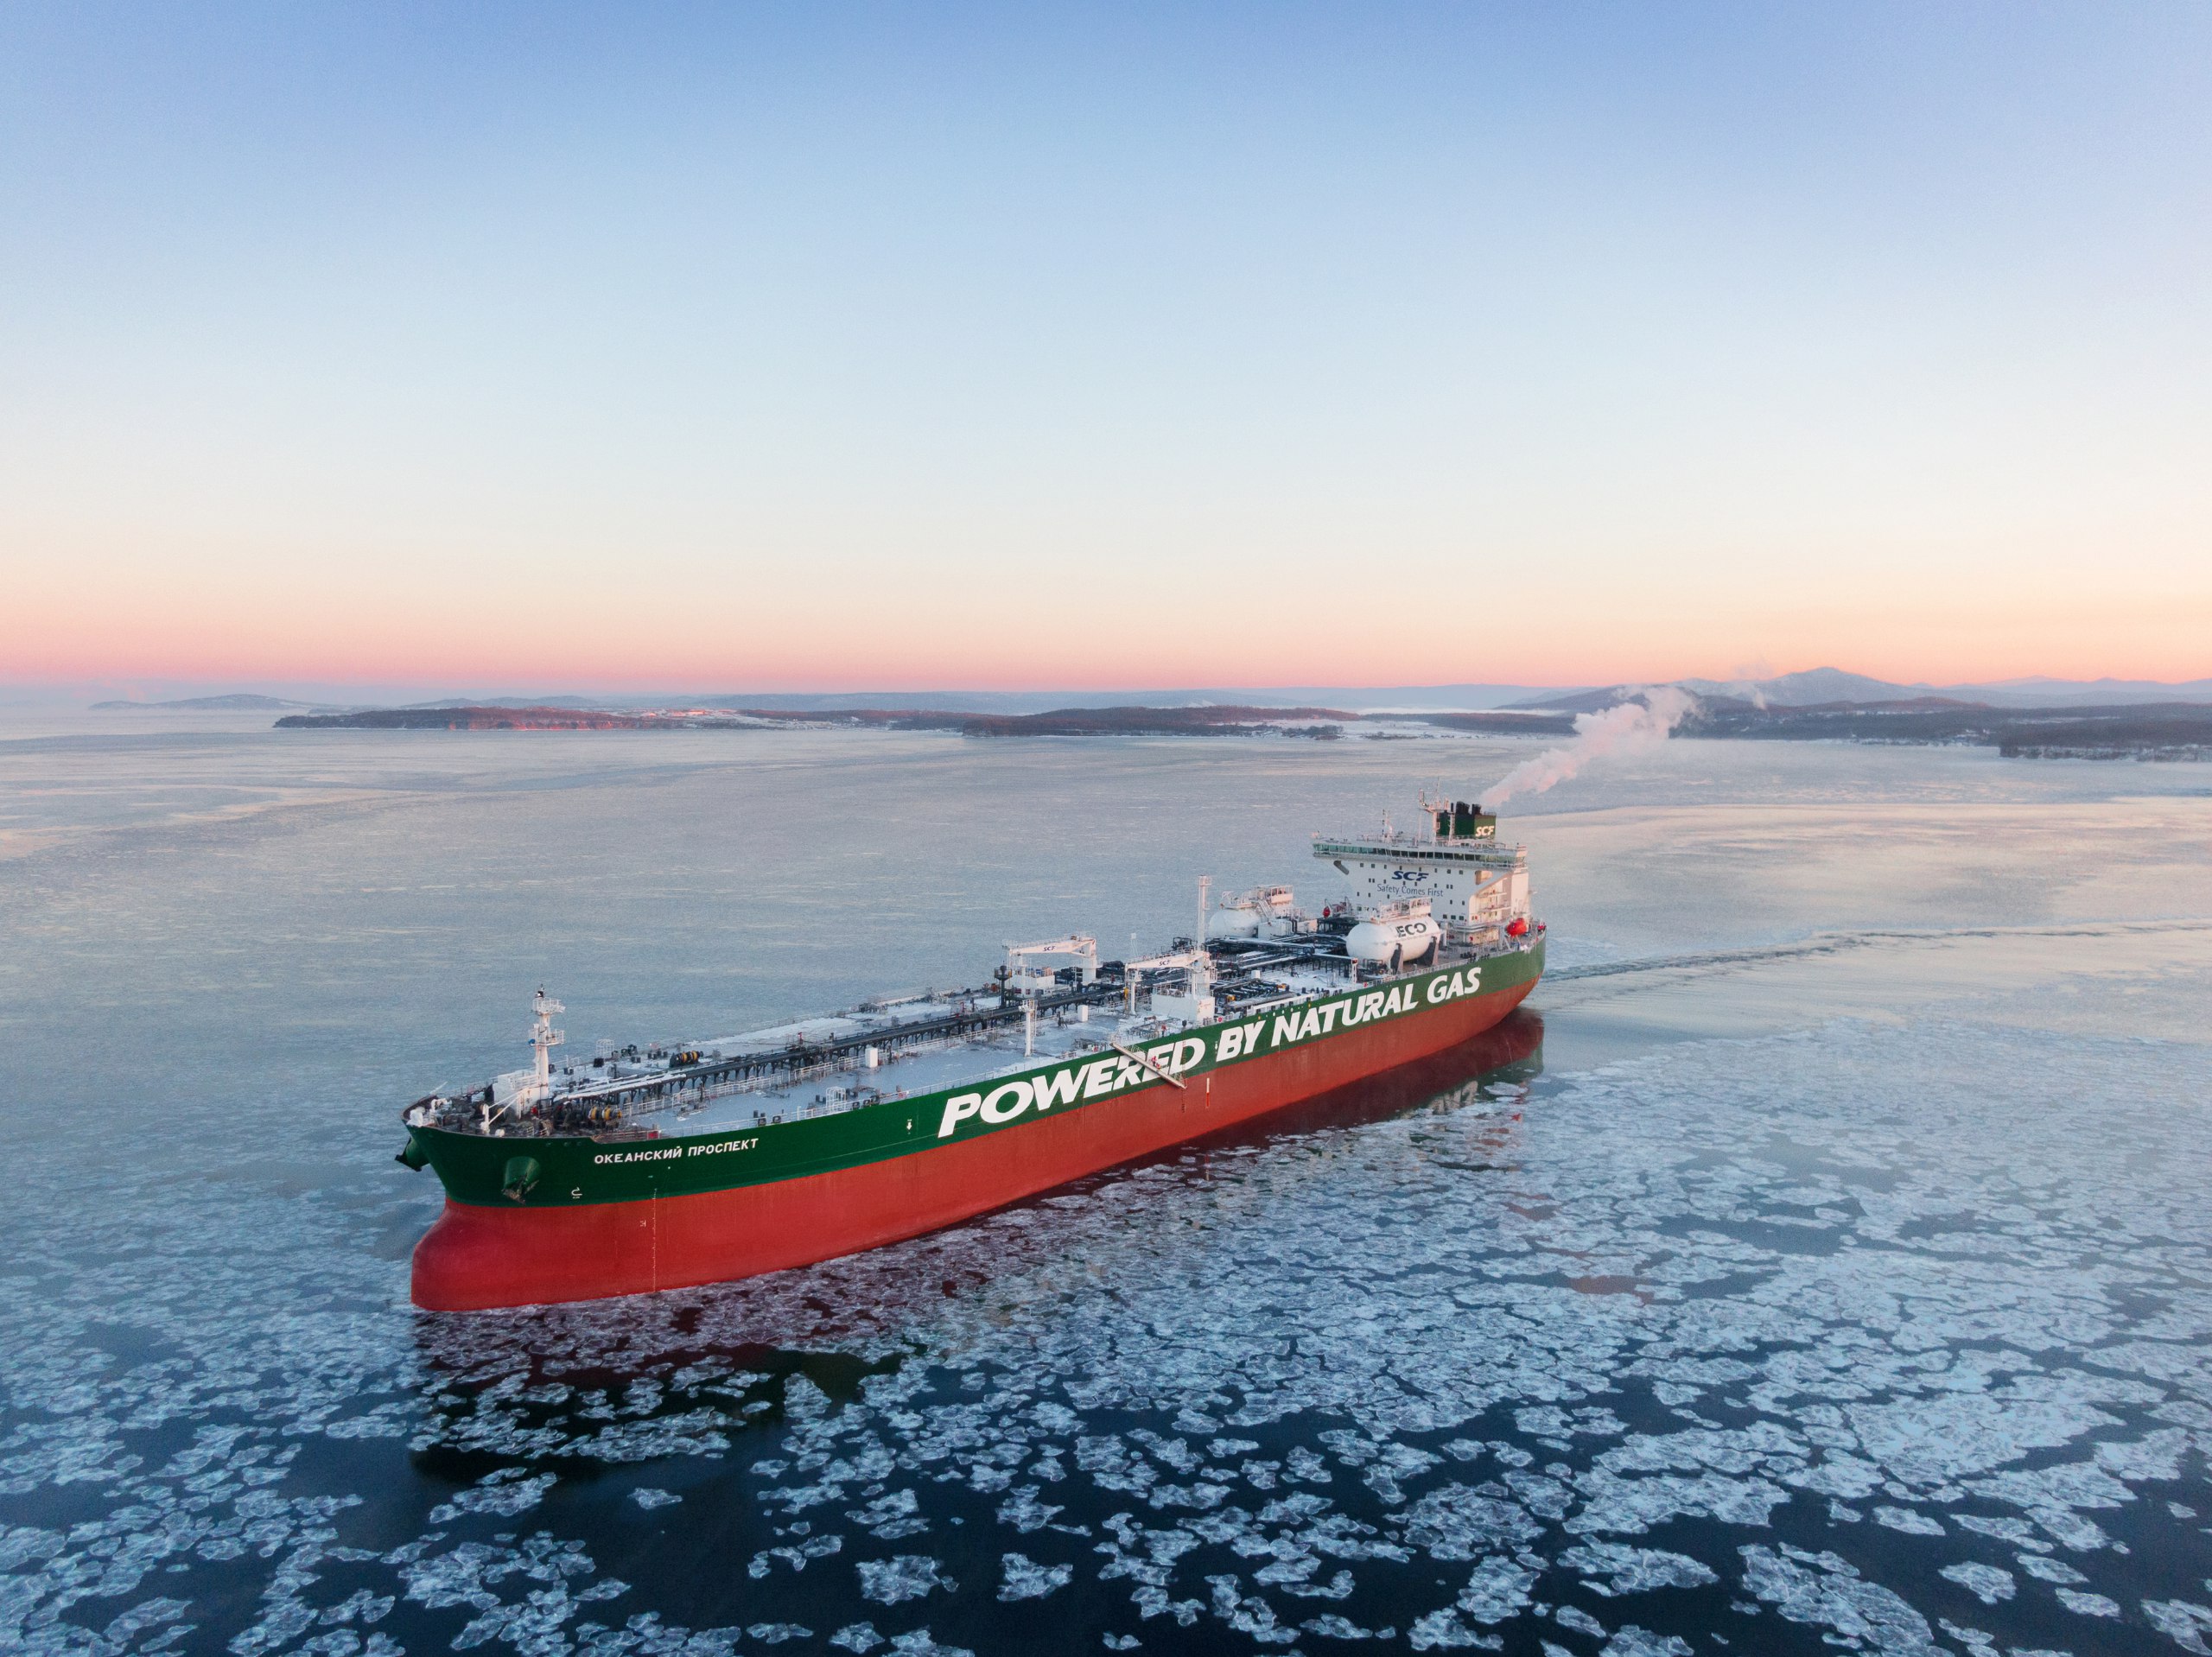 Sovcomflot’s new oil tanker Okeansky Prospect underwent first loading at port Kozmino